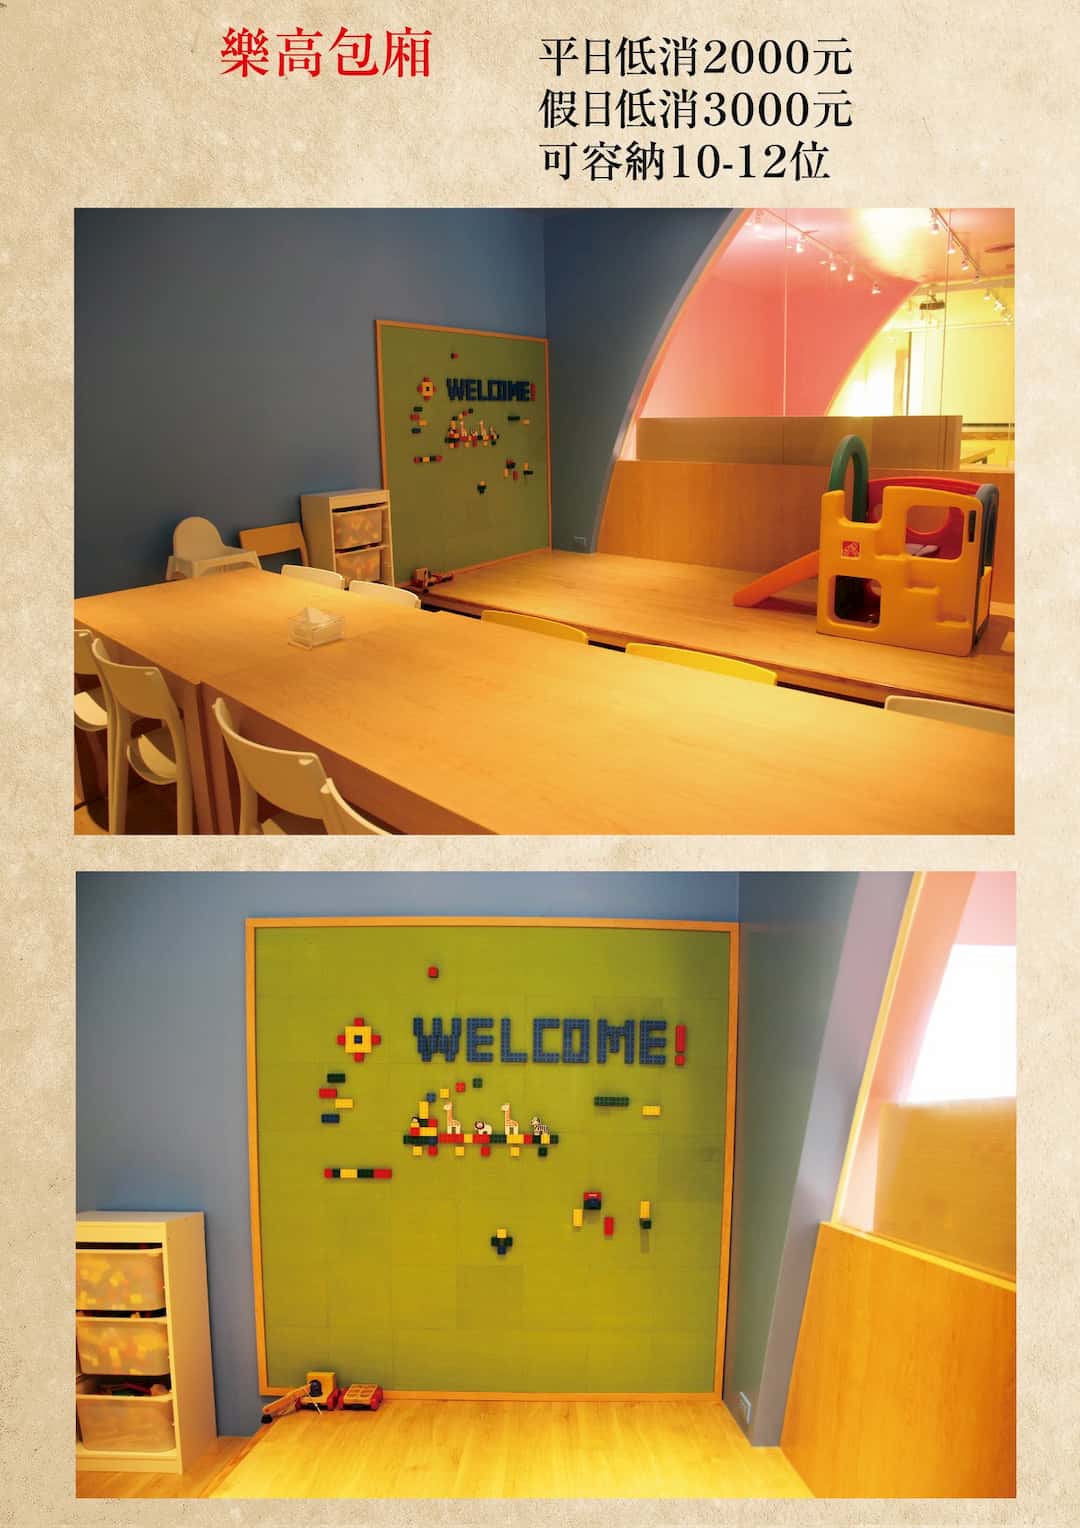 叉子餐廳- 2F兒童遊戲樂高包廂區- 圖片來源:叉子餐廳官方FB